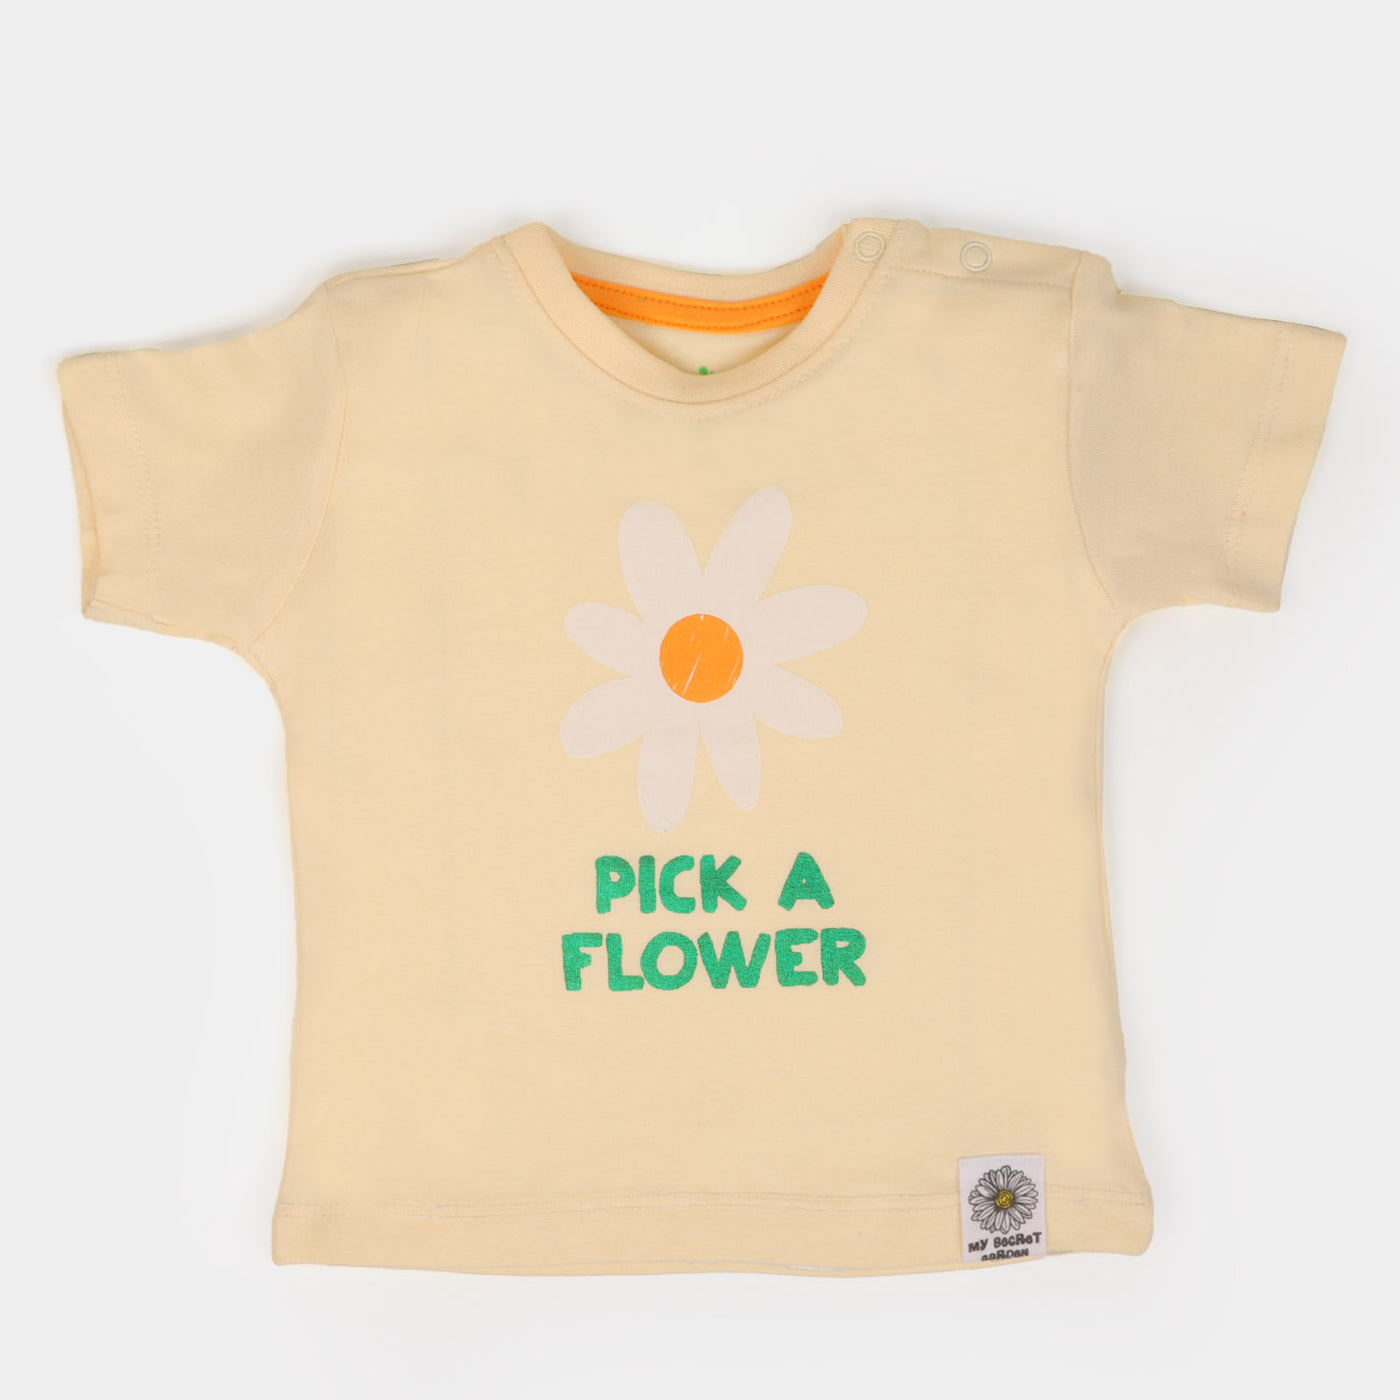 Infant Girls Cotton T-Shirt Pick A Flower - Light Beige